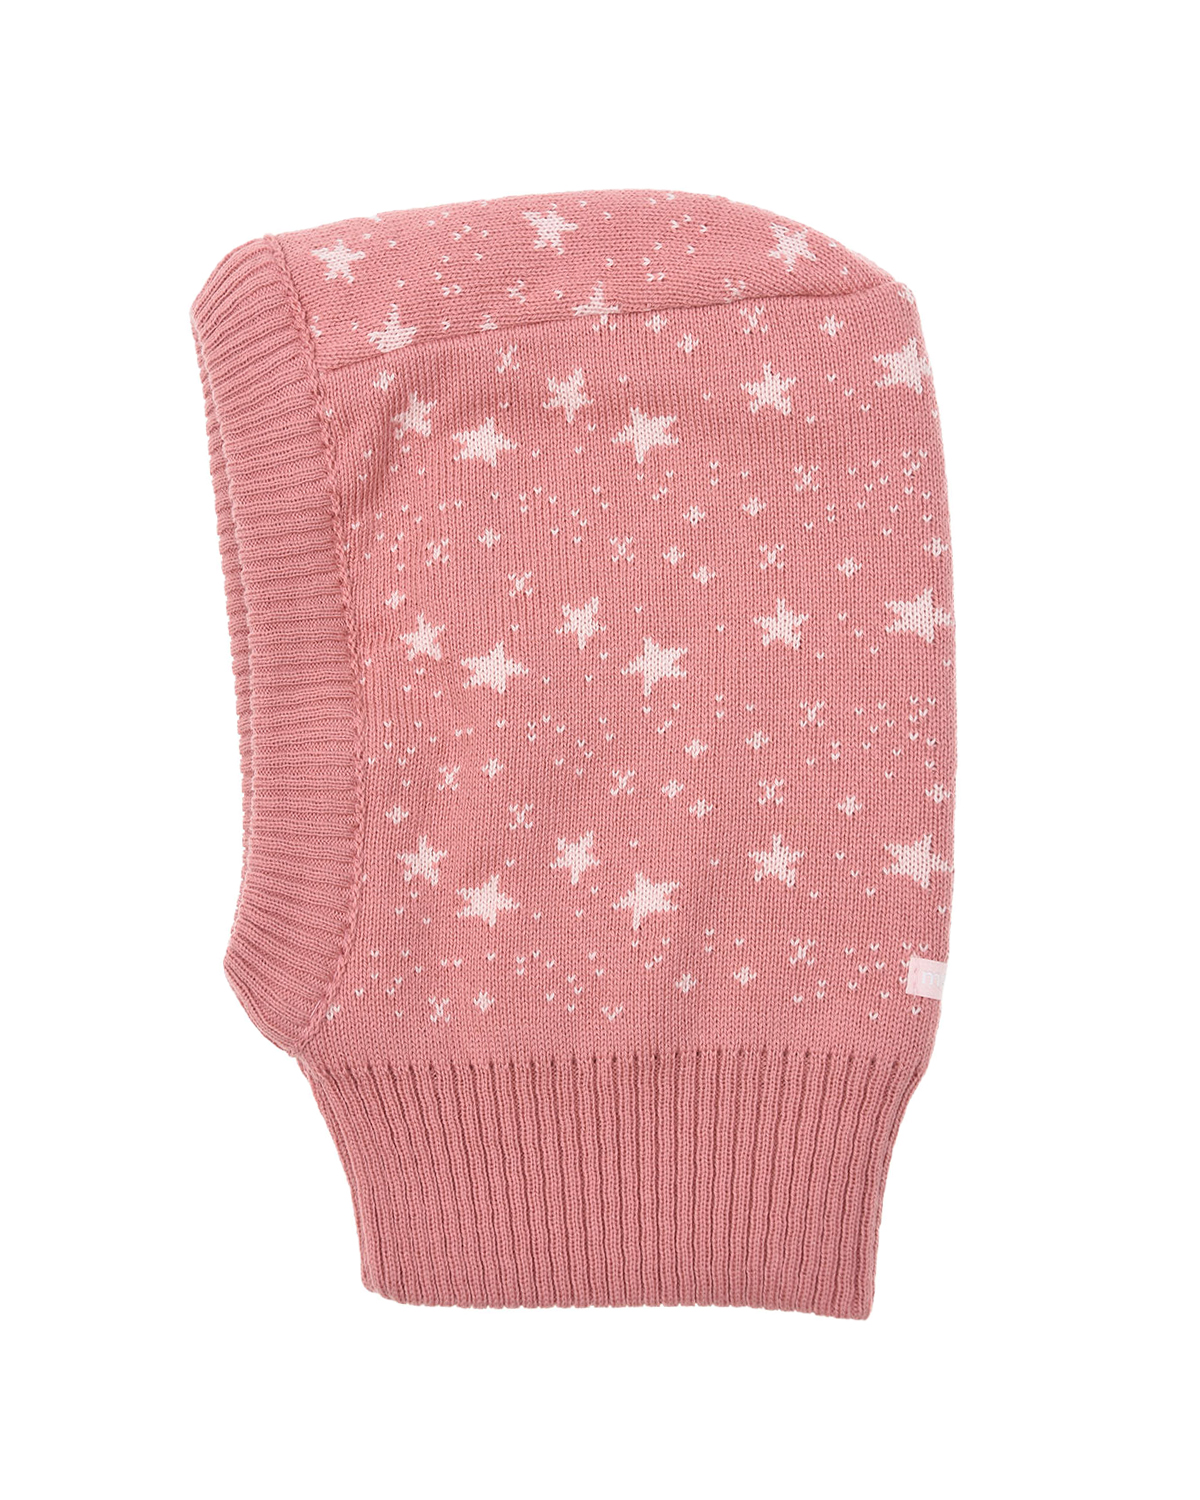 Розовая шапка-шлум с принтом "звездочки" MaxiMo детская, размер 45, цвет розовый - фото 3